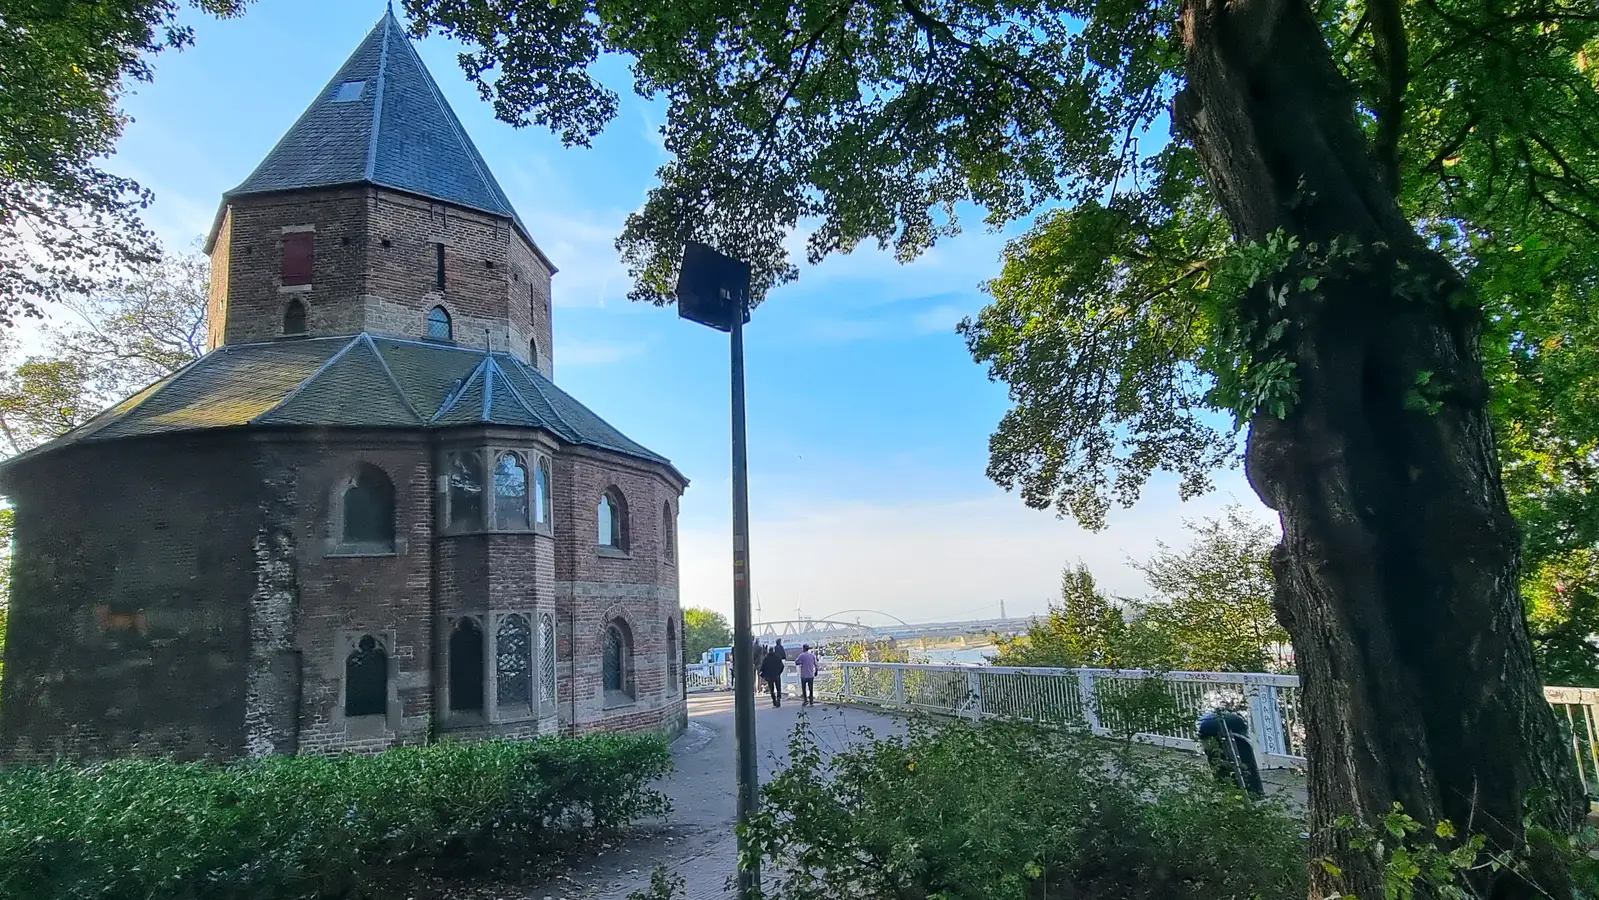 Nikolauskappelle Nimwegen, Kapelle vom Karl dem Großen, Kaiserpfalz Nimwegen, Sehenswürdigkeiten von Nijmegen, älteste Stadt der Niederlande